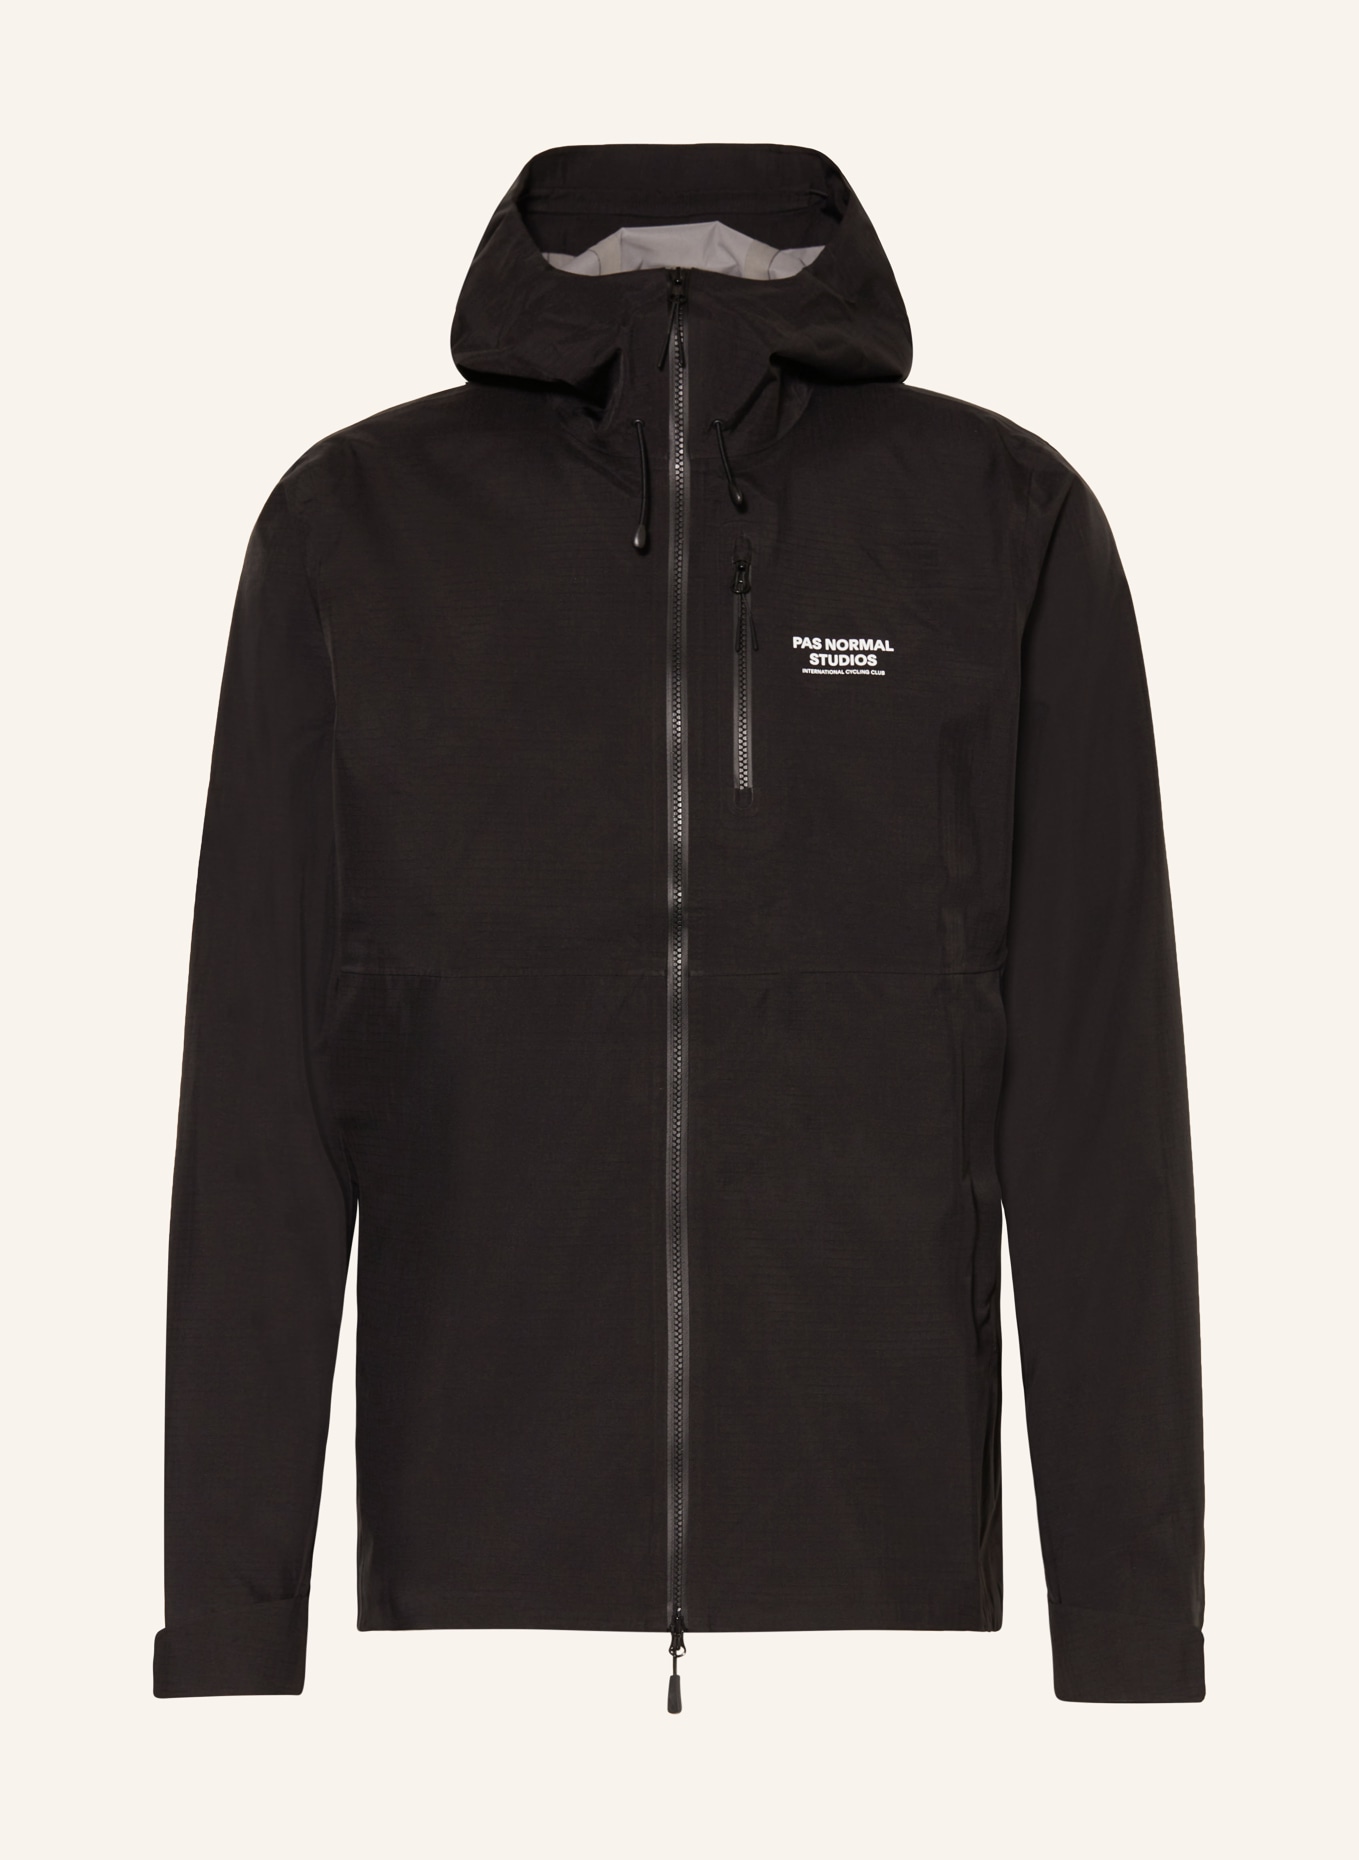 PAS NORMAL STUDIOS Rain jacket OFF-RACE, Color: BLACK (Image 1)